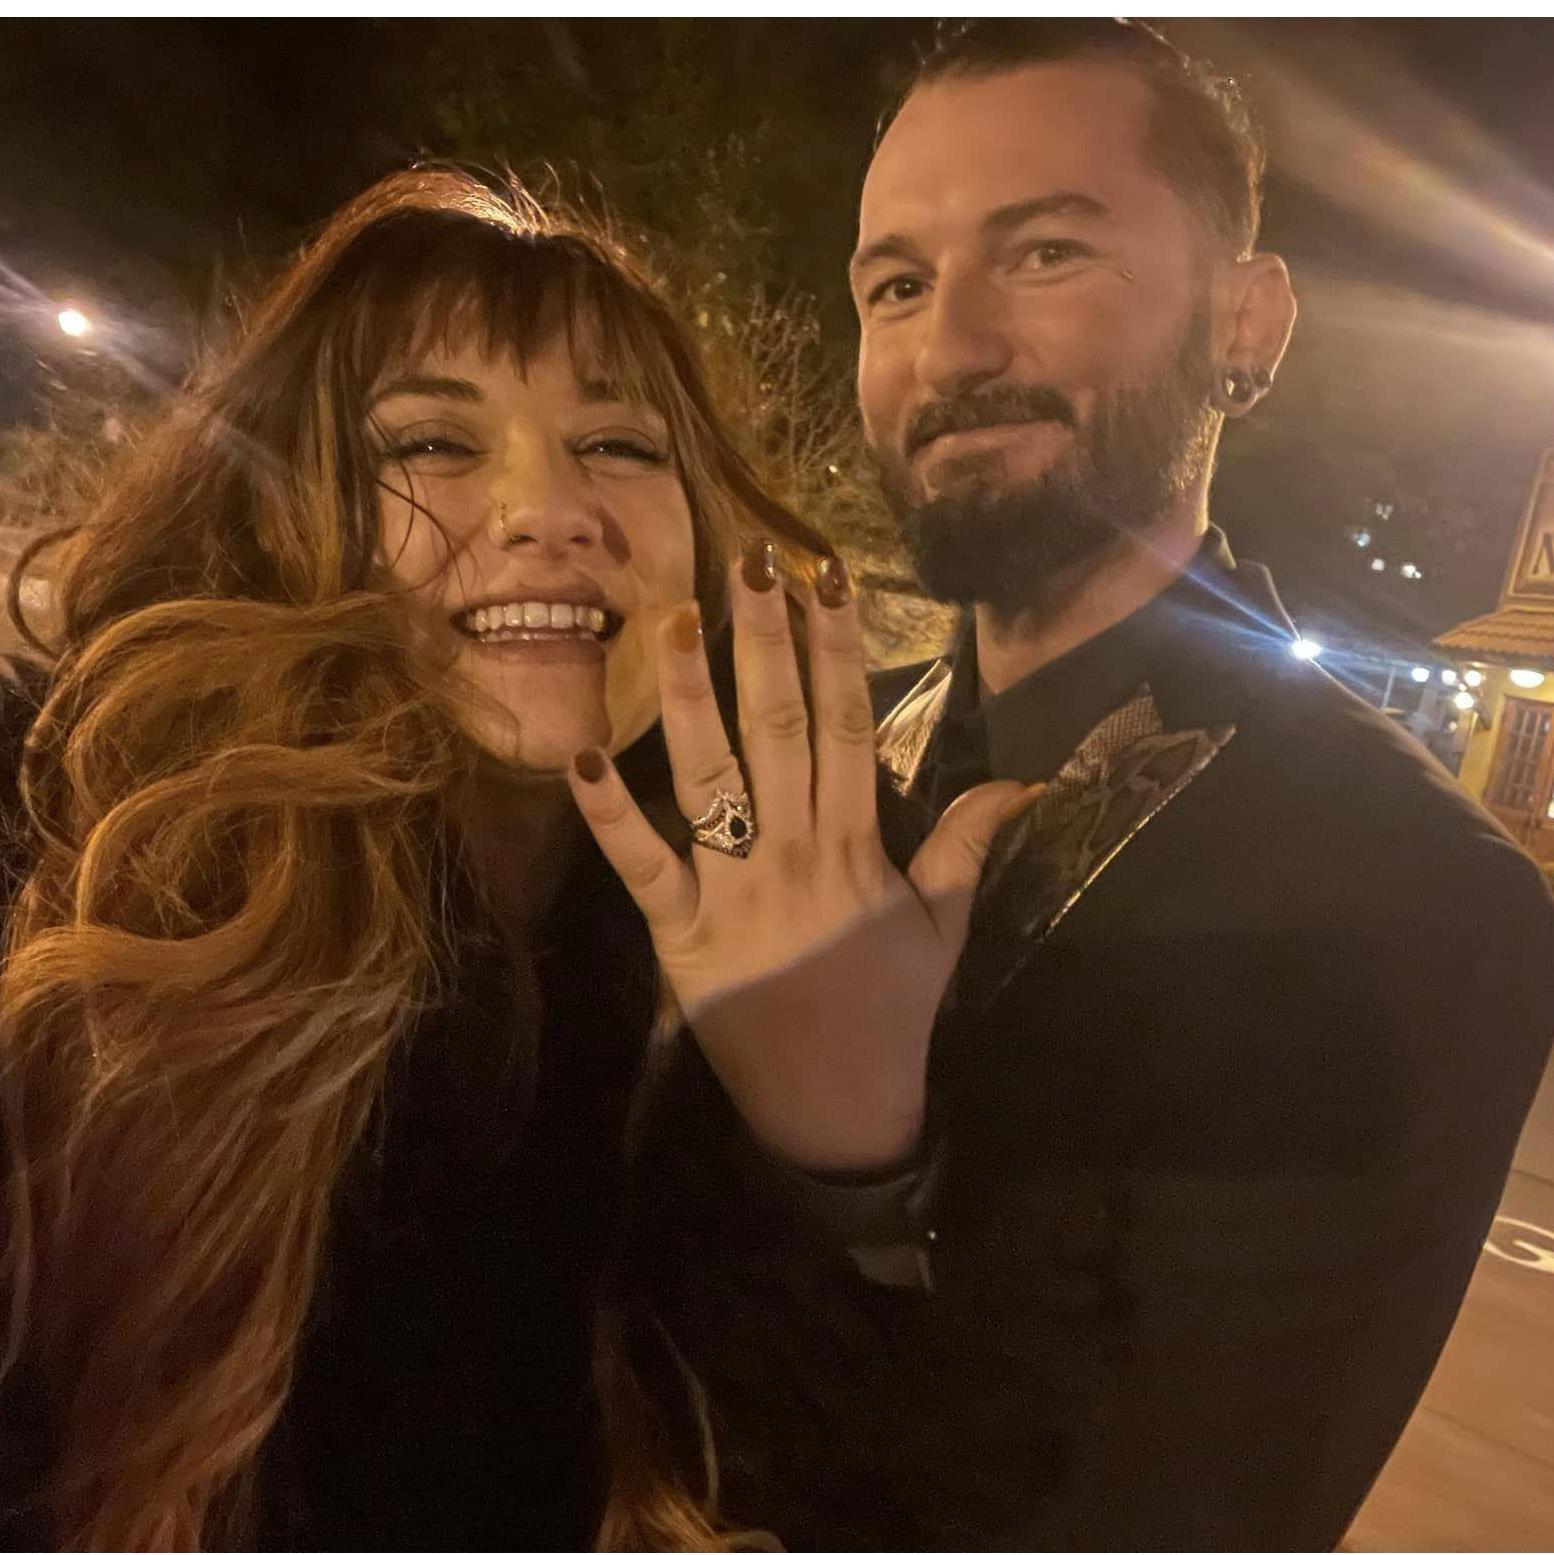 We got Engaged!